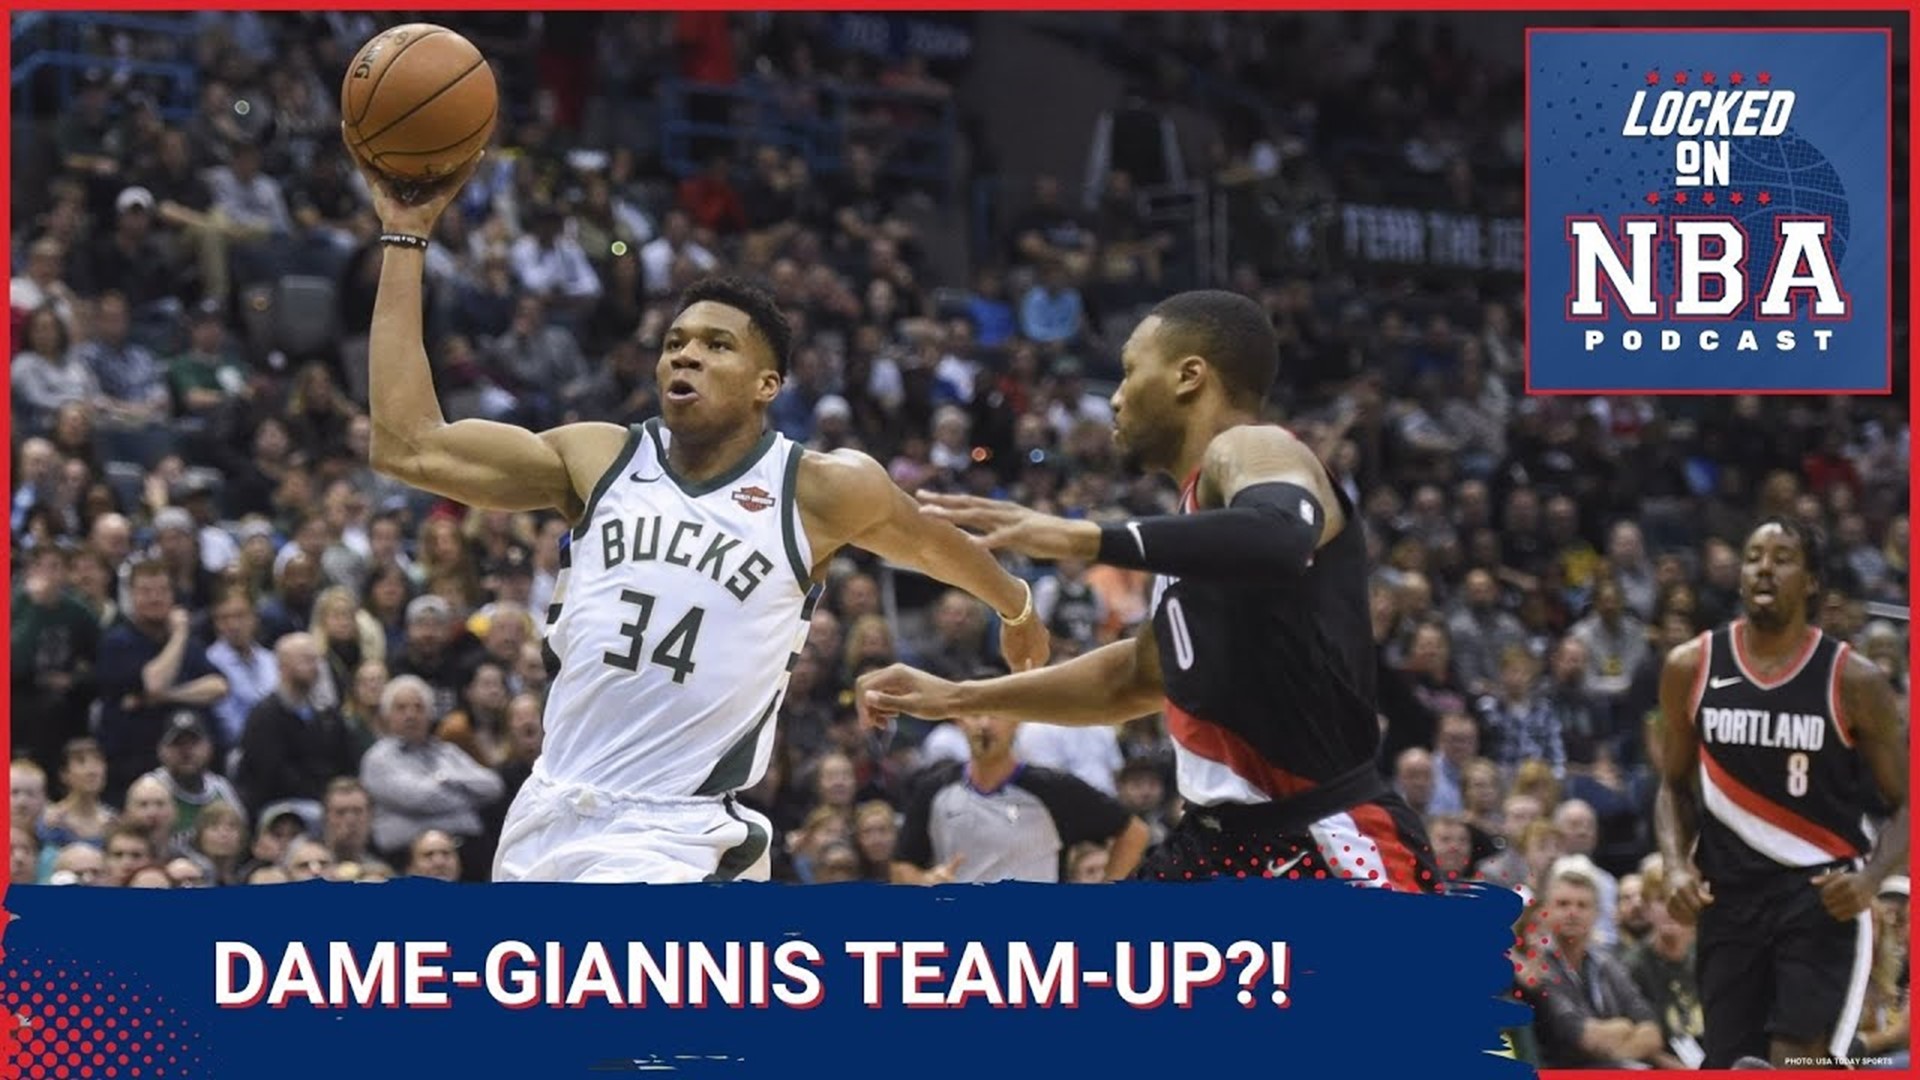 Portland Trail Blazers guard Damian Lillard named an NBA All-Star